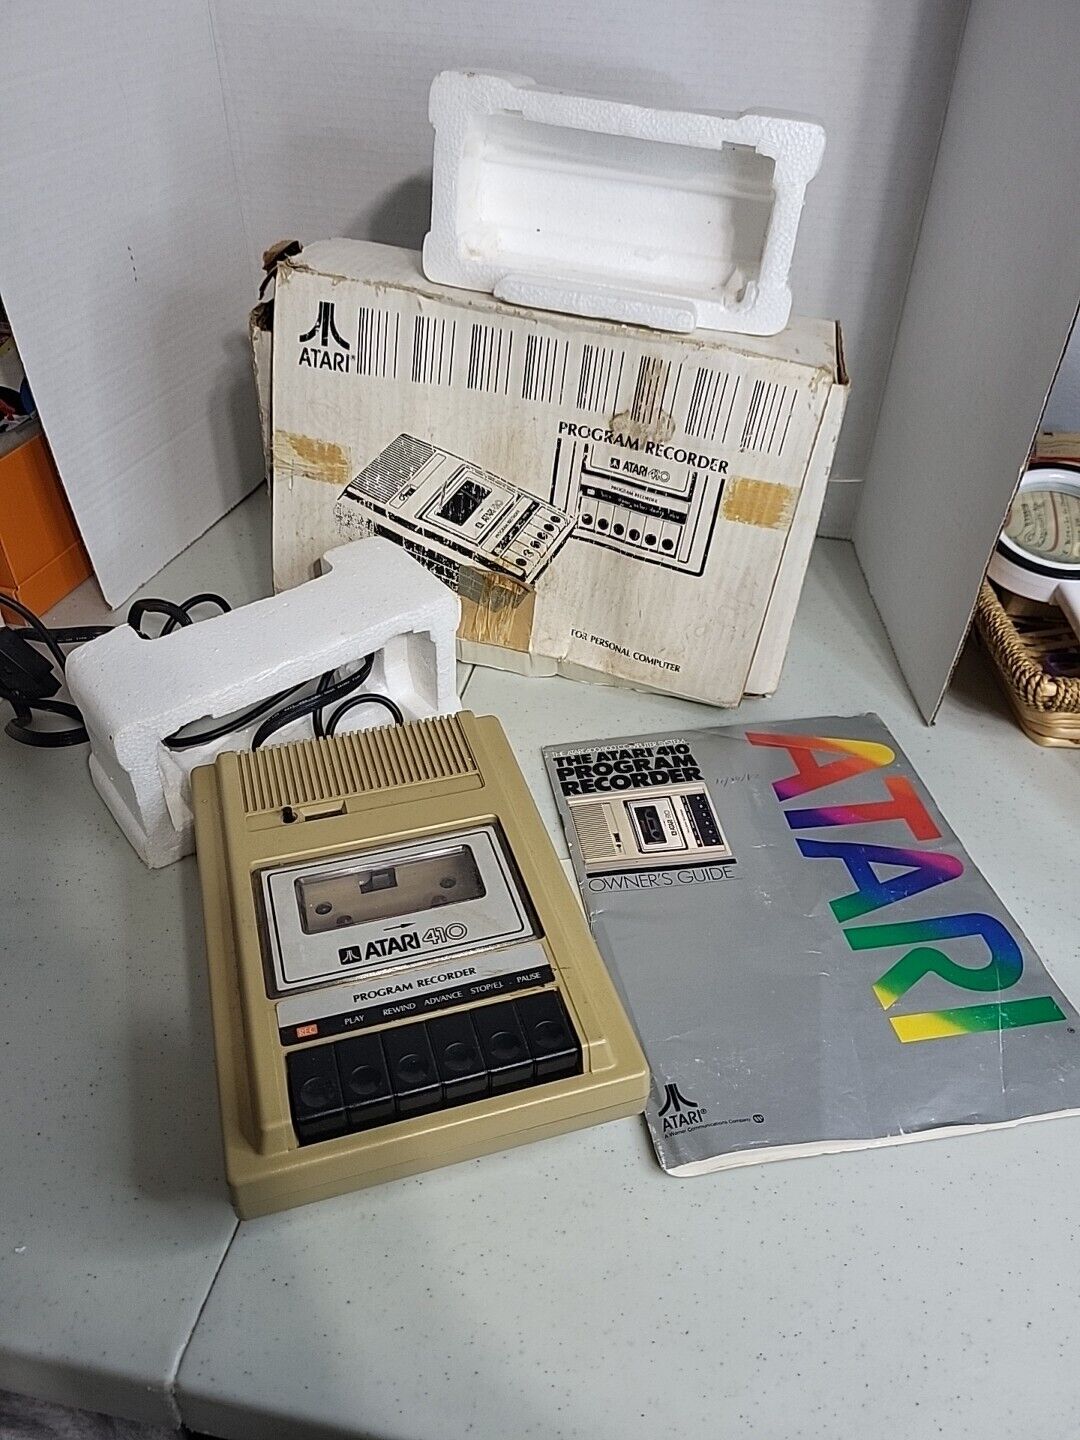 Atari 410 Program Recorder Cassette Deck Boxed Untested - Spares/Repairs